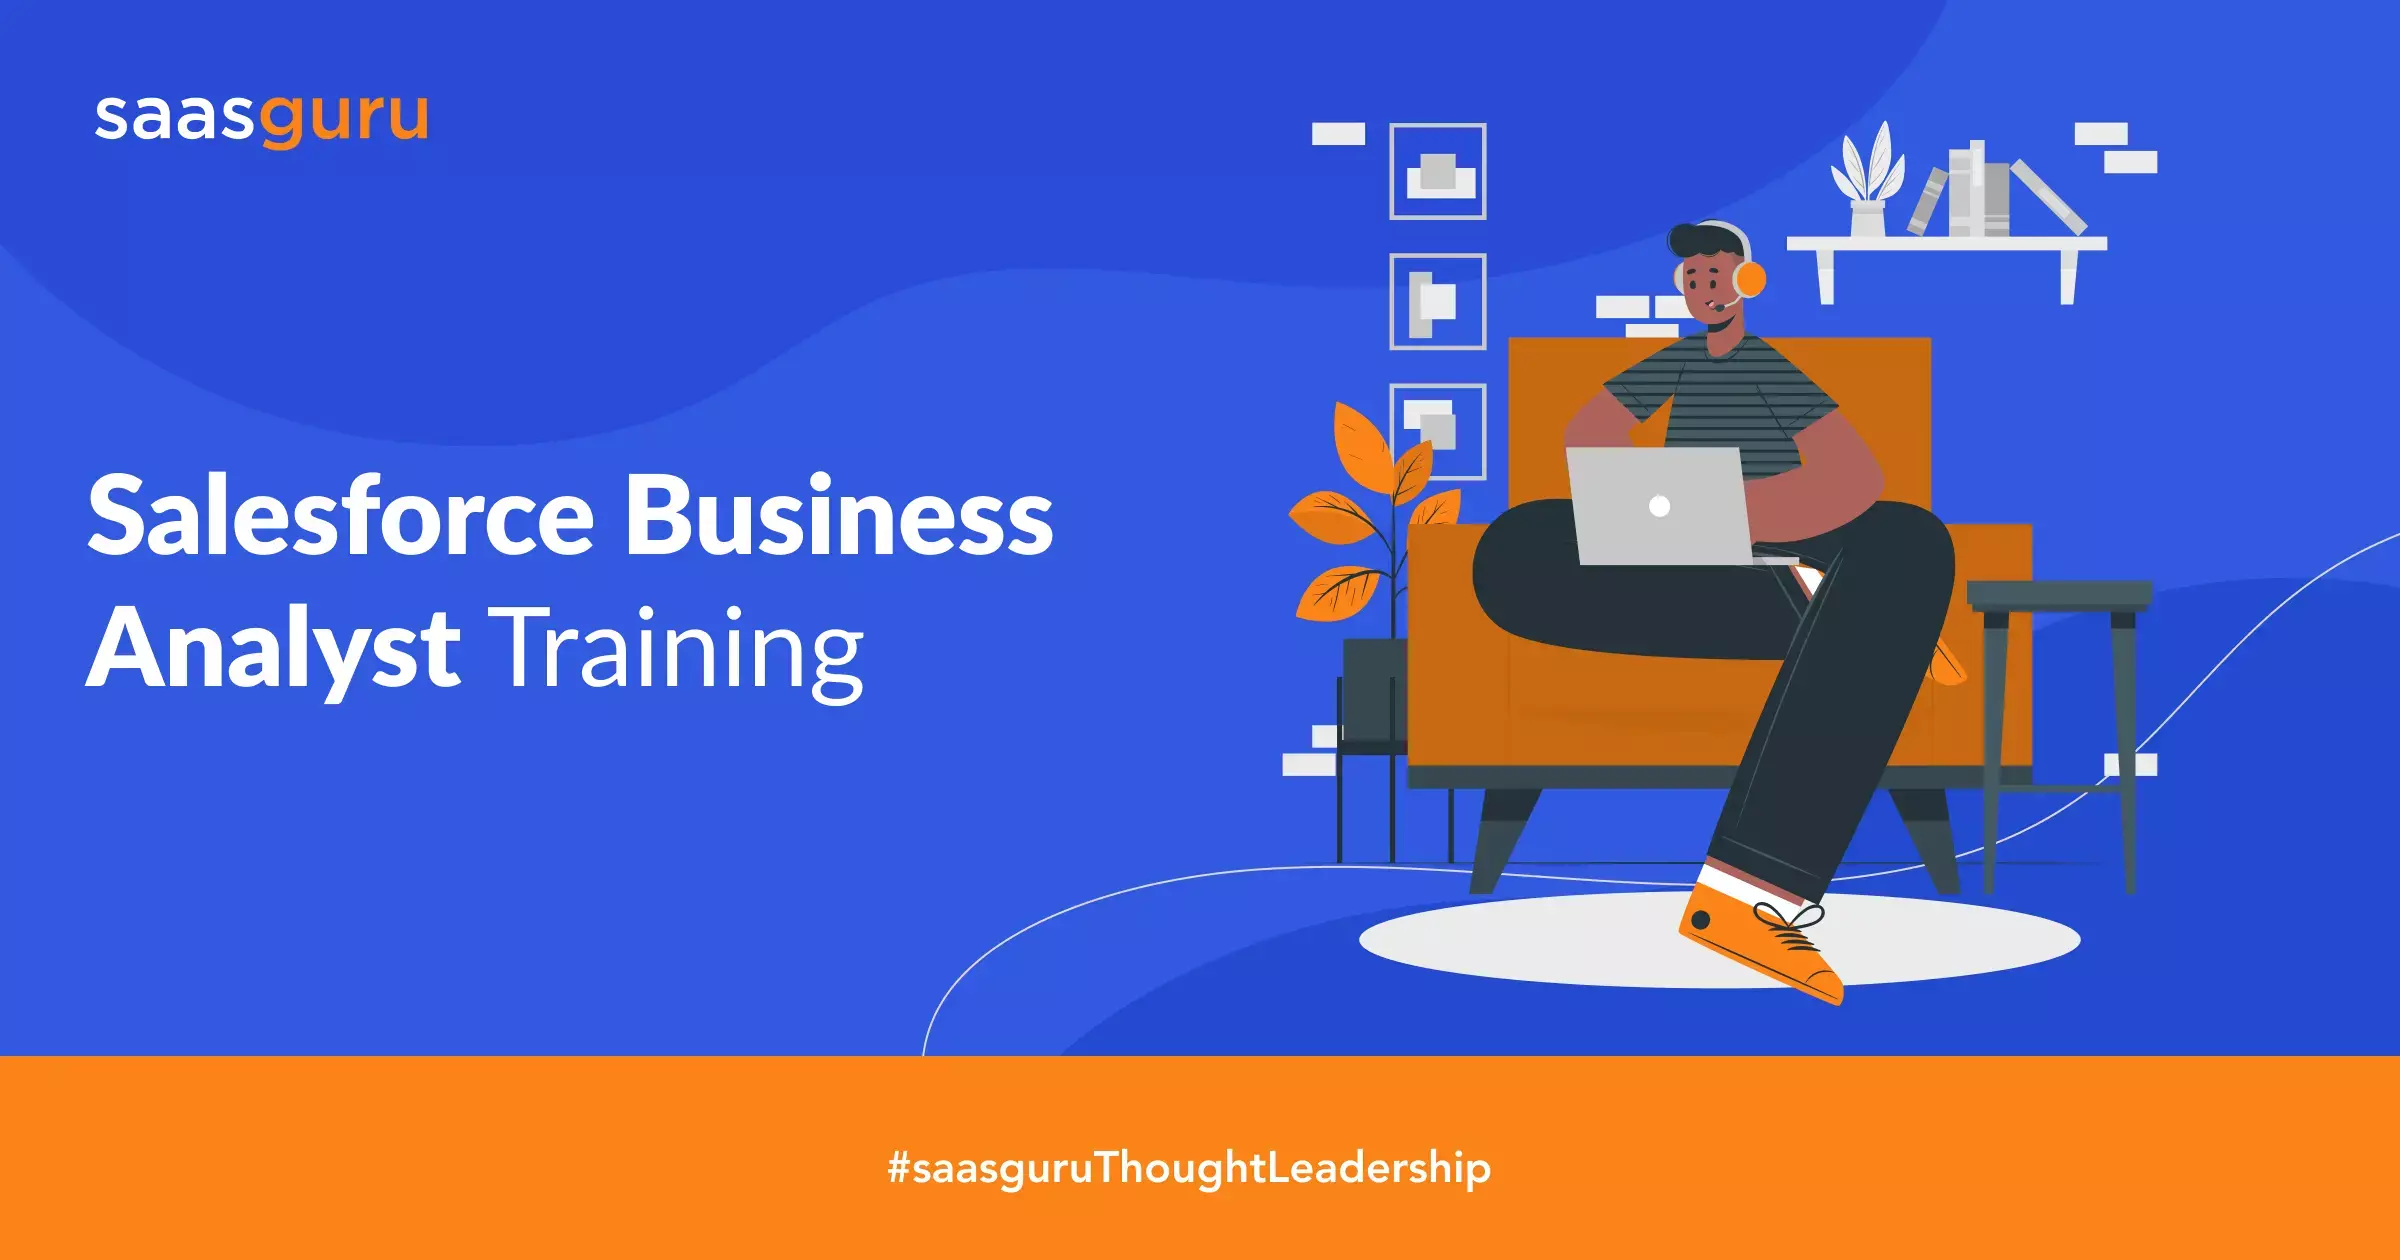 Salesforce Business Analyst Training by saasguru